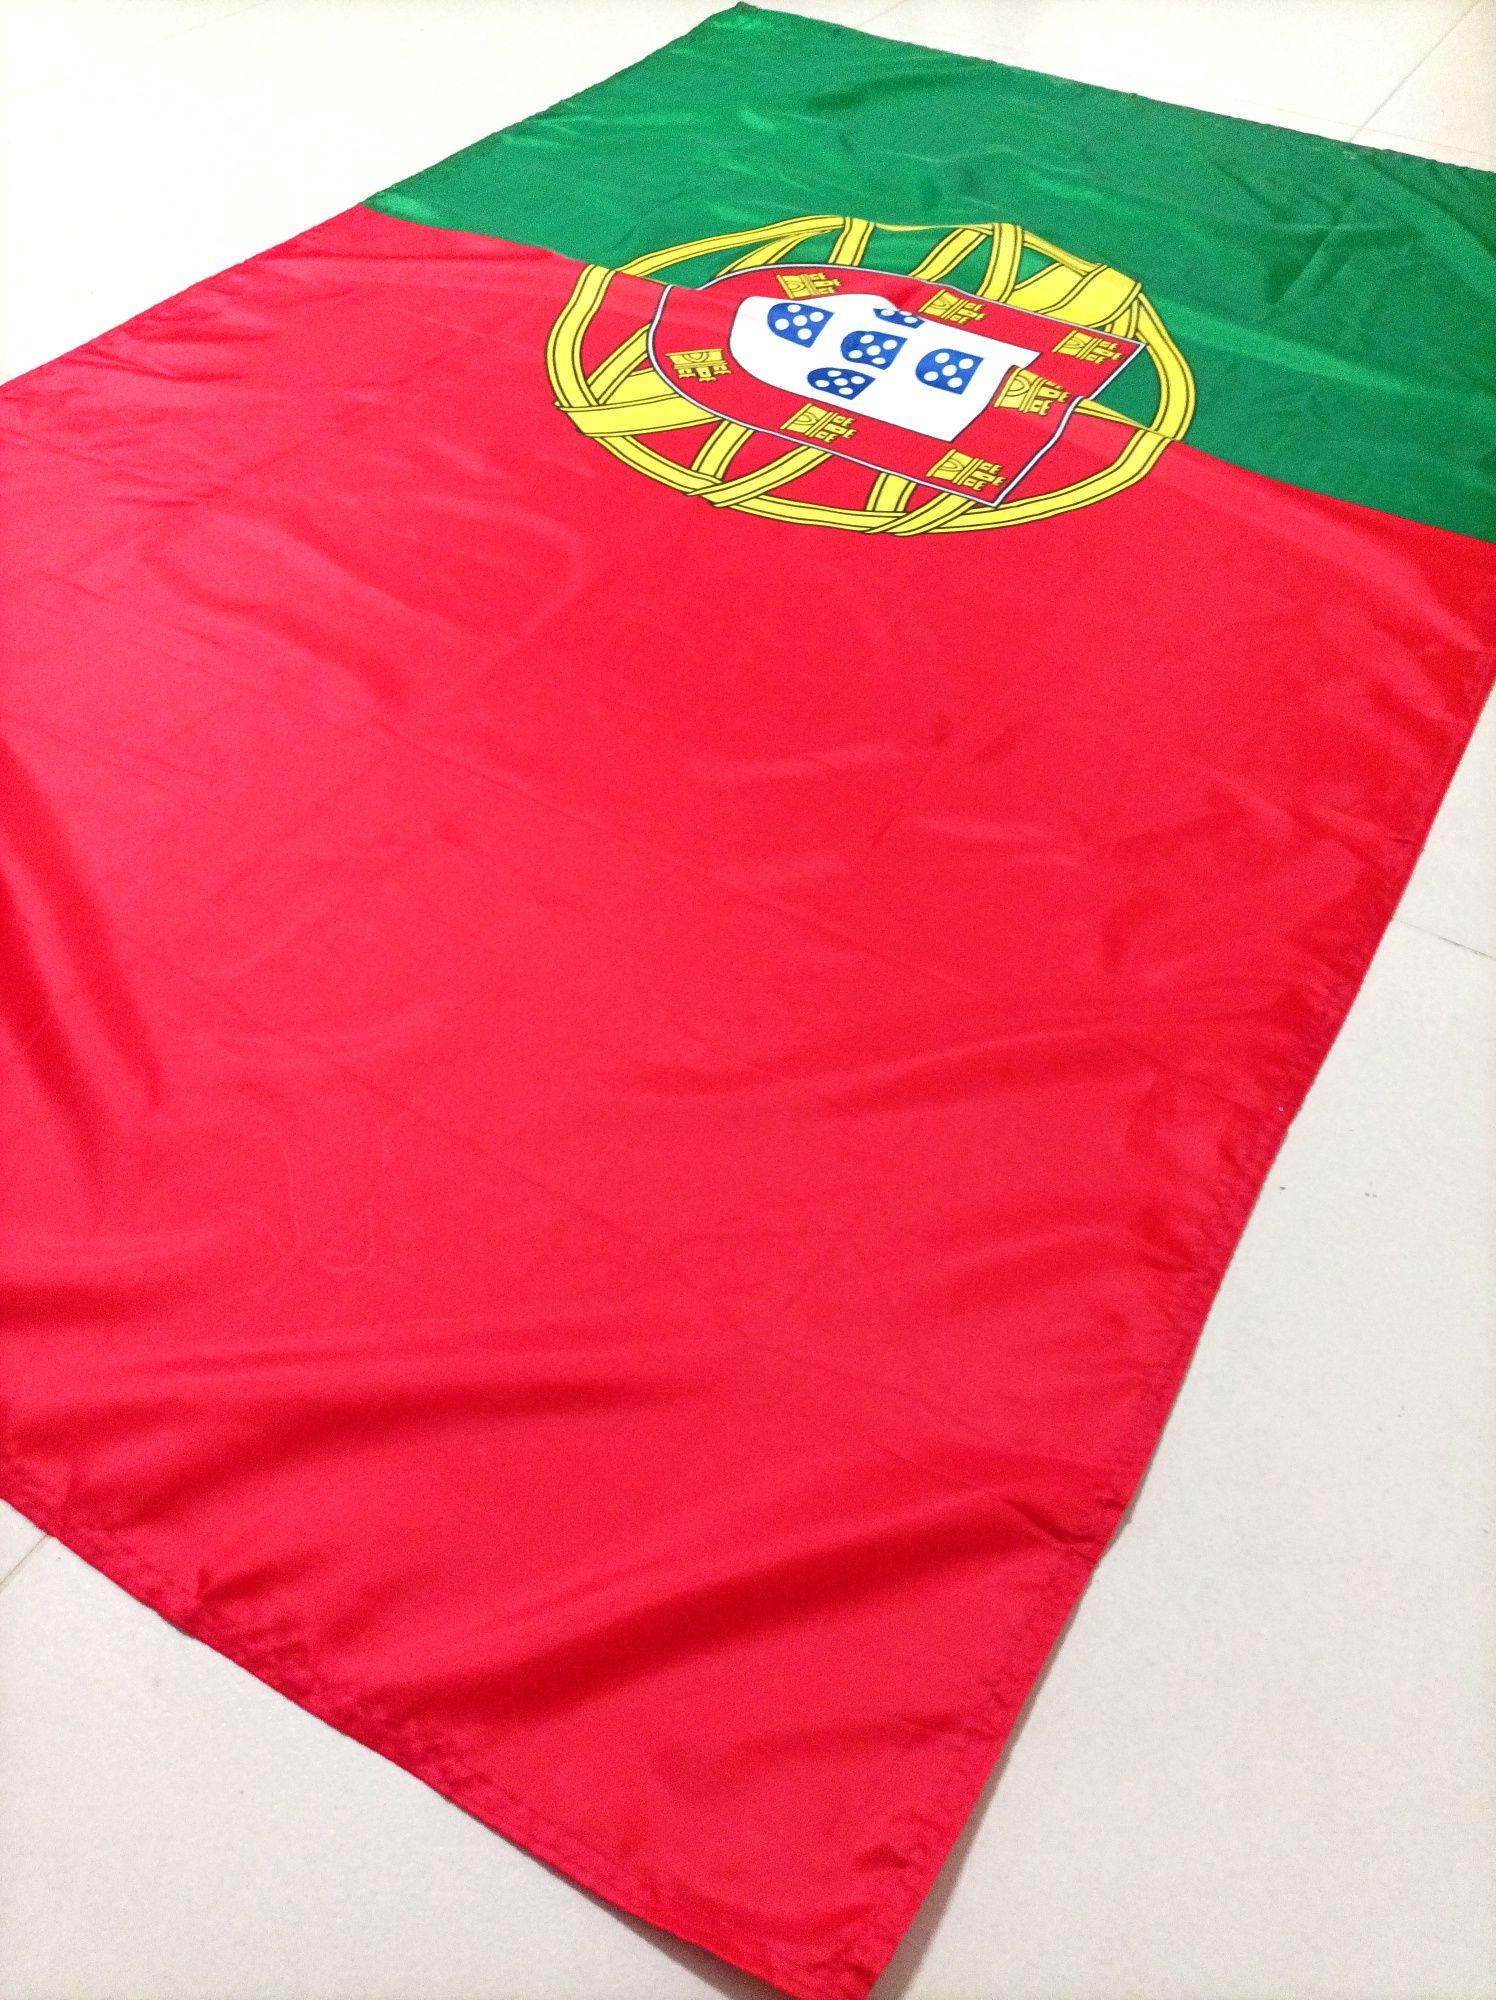 Bandeira de Portugal (Tamanho Grande)